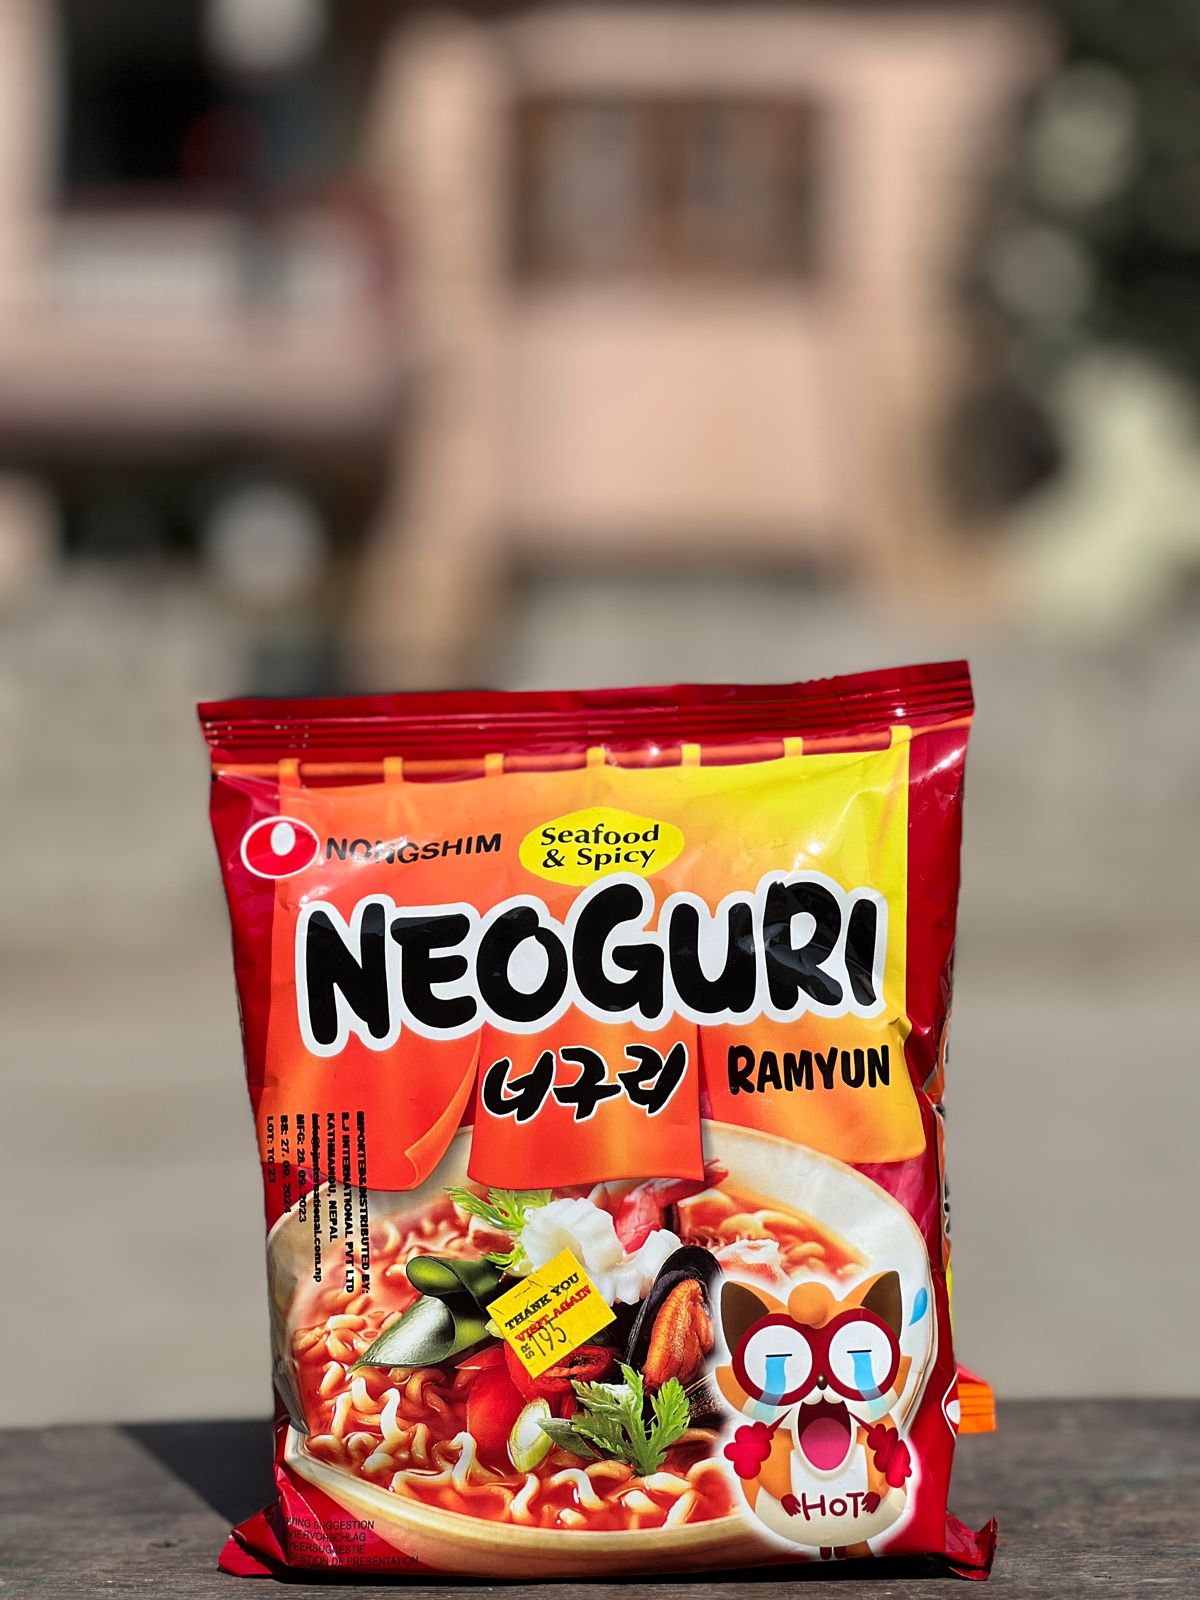 nong-shim-noodle-ramyun-neoguri-seafood-mild-120gm